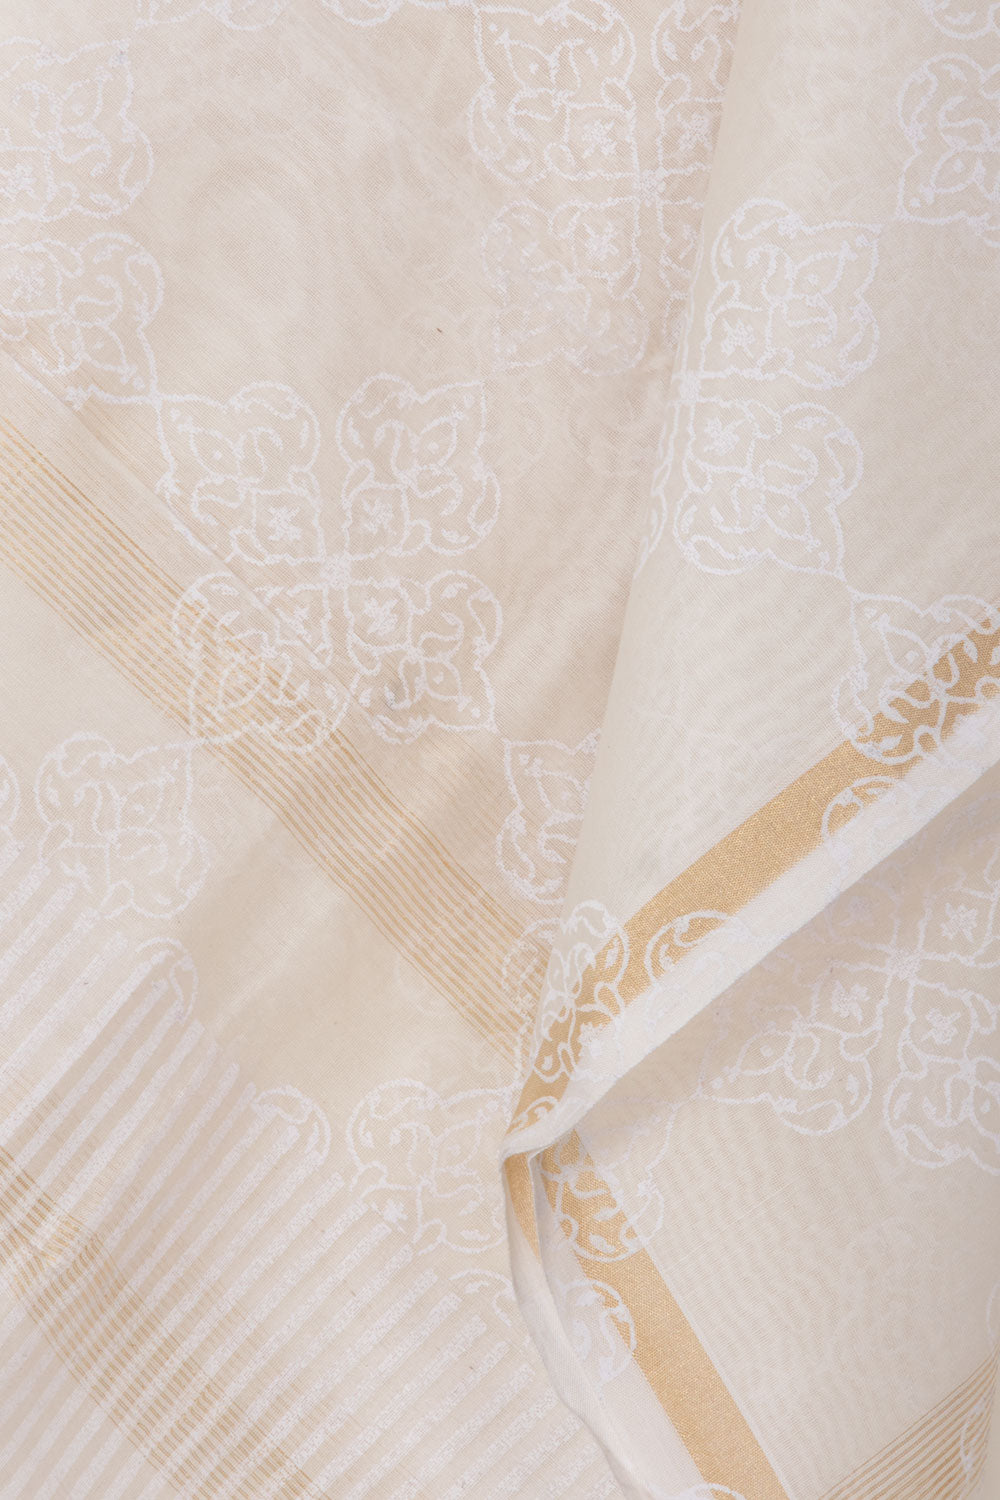 Off White Handwoven Chanderi Silk Cotton Dupatta 10061081